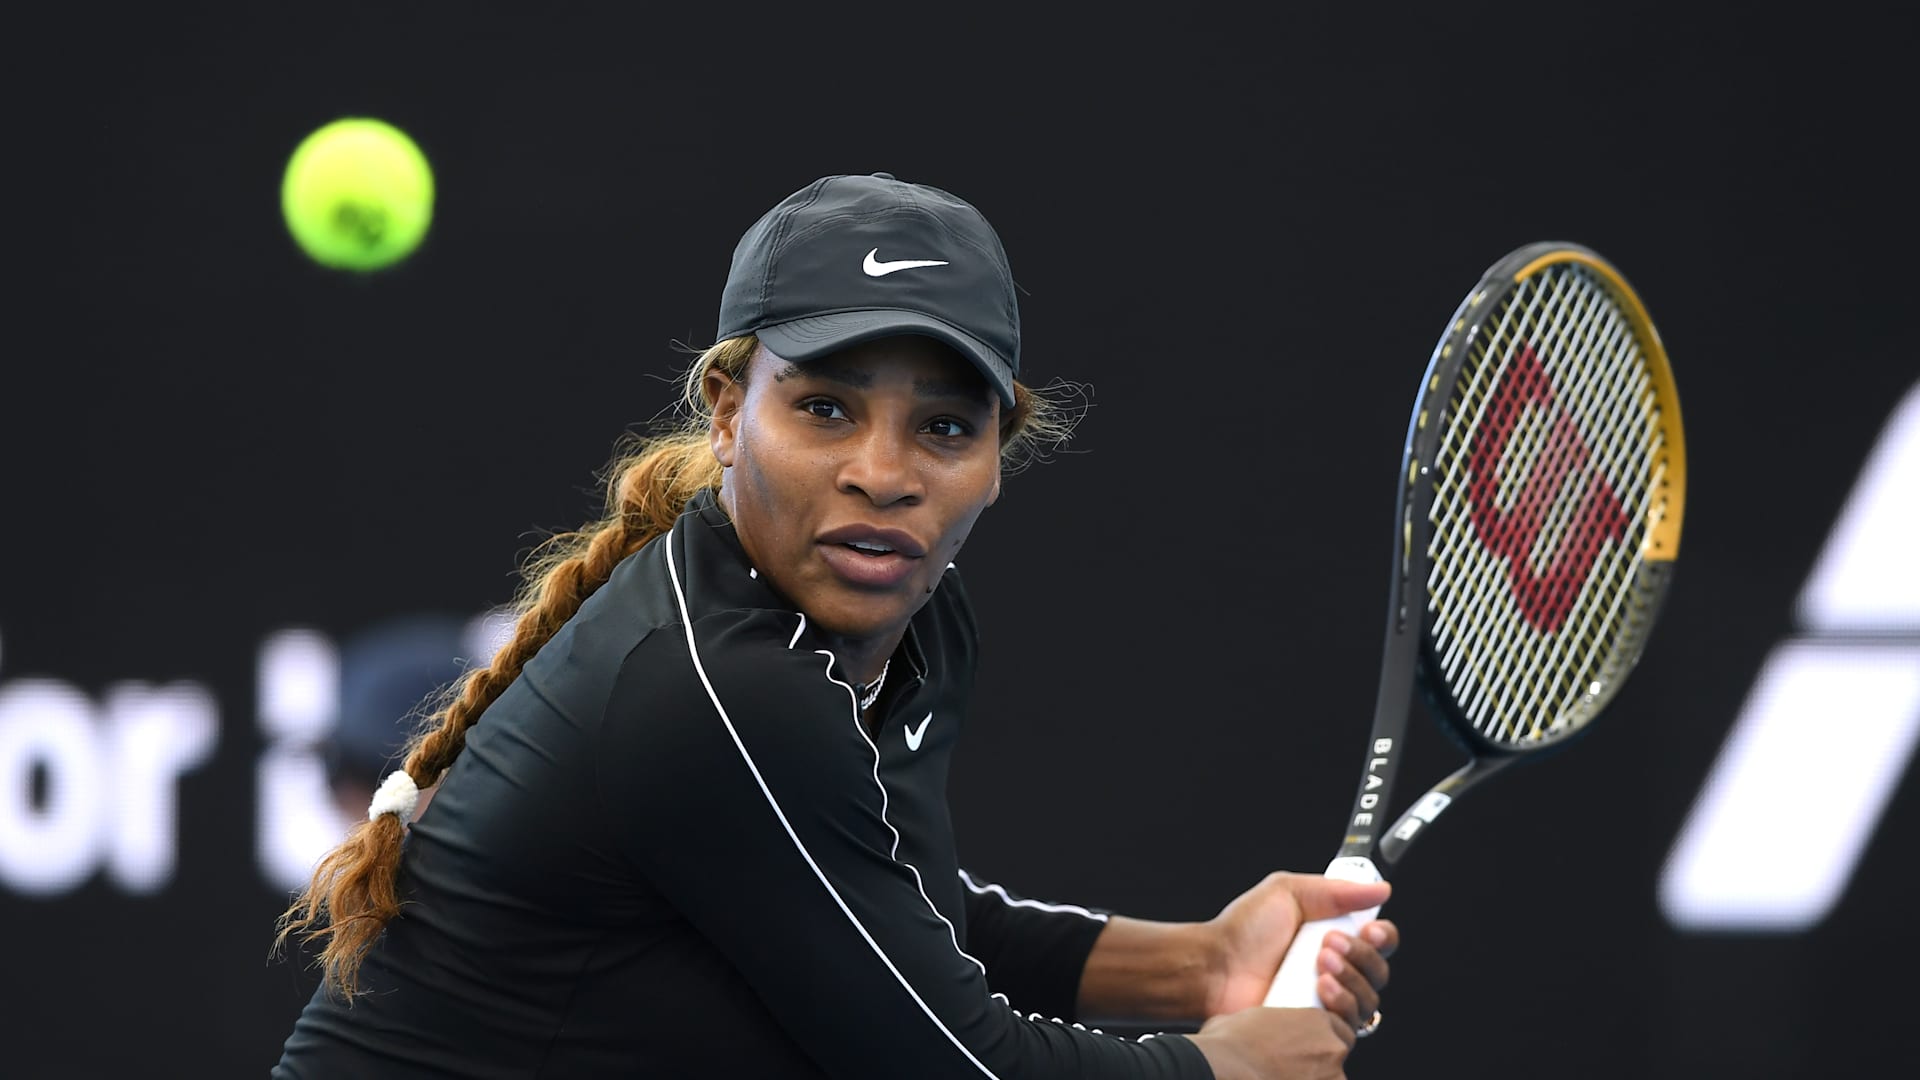 Serena Williams (Trajetória de Sucesso) 